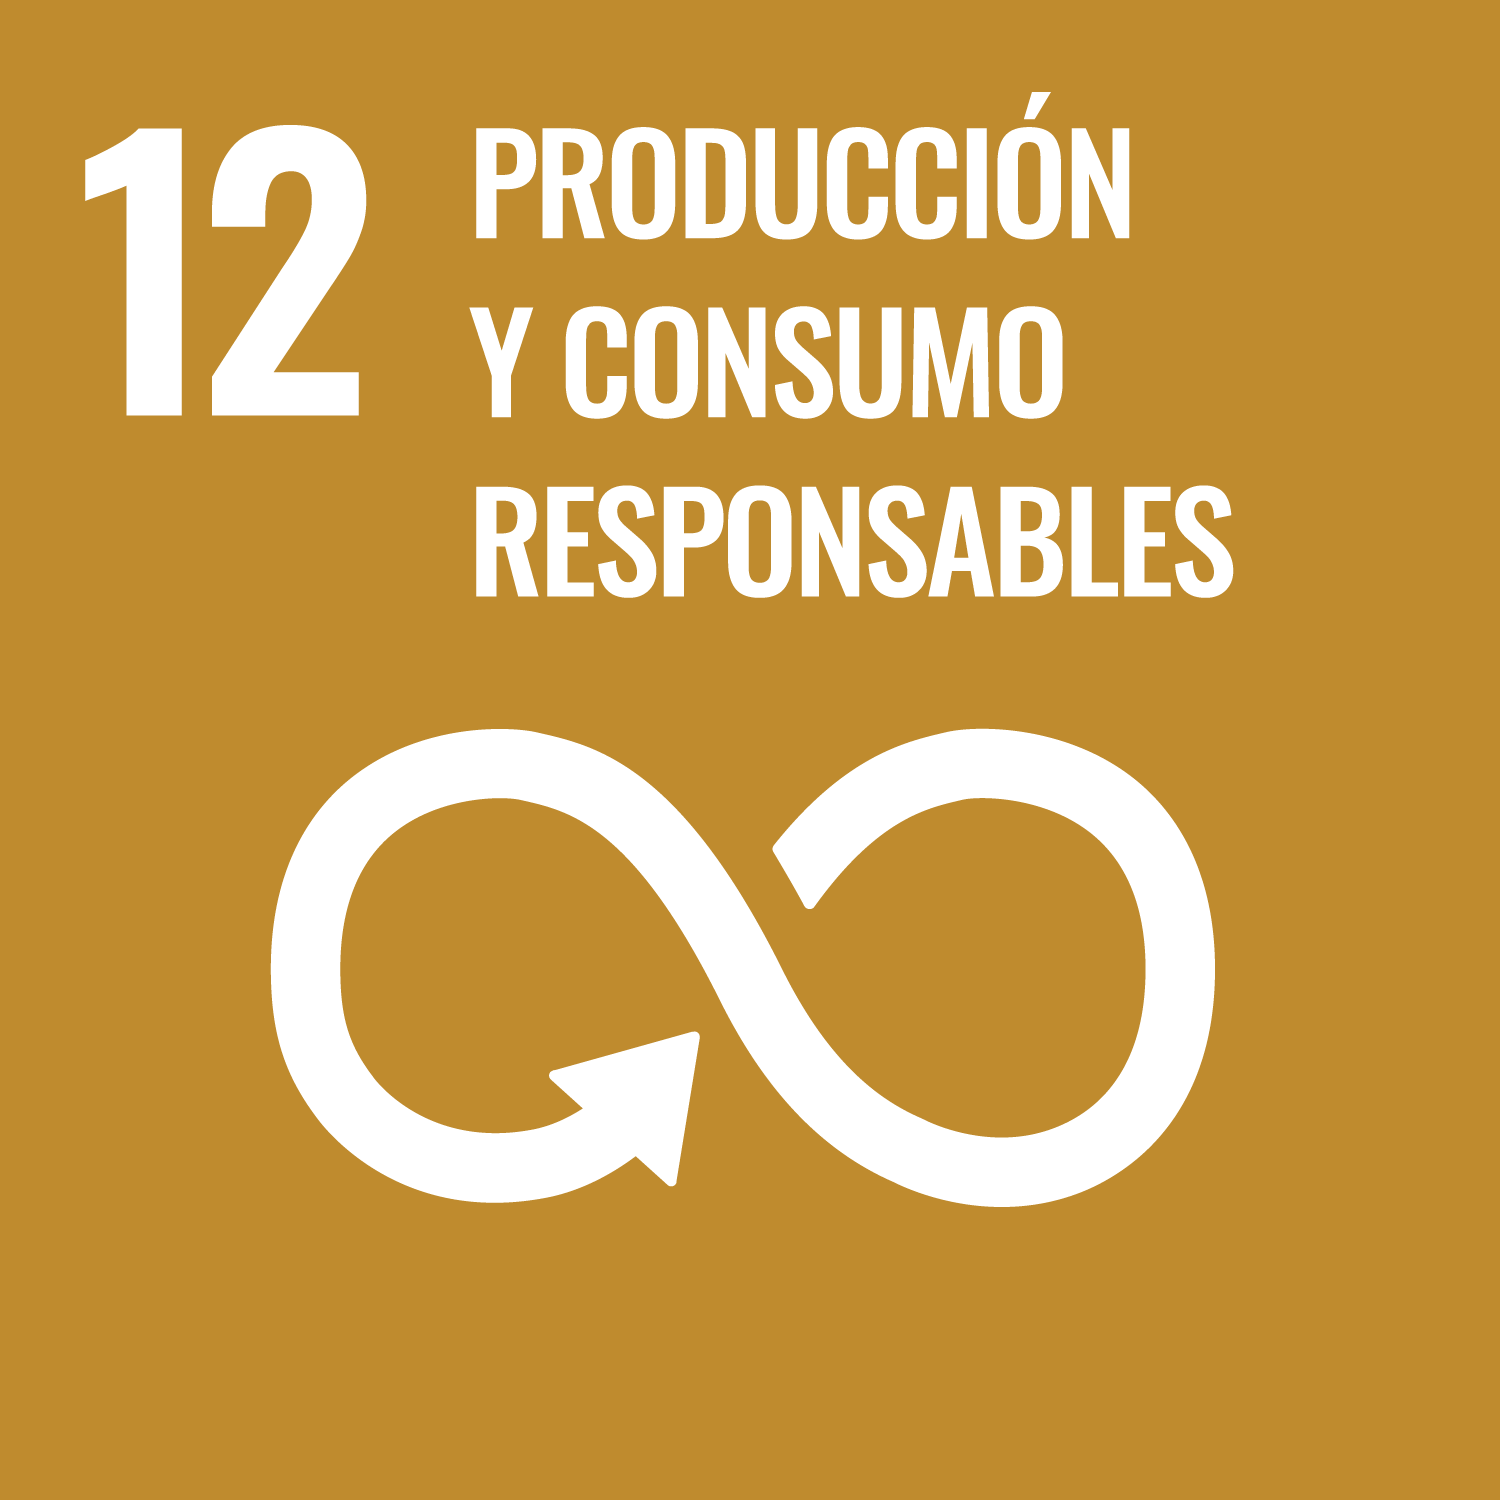 Compromiso de Visita Gijón/Xixón con el ODS 12 producción y consumo responsable